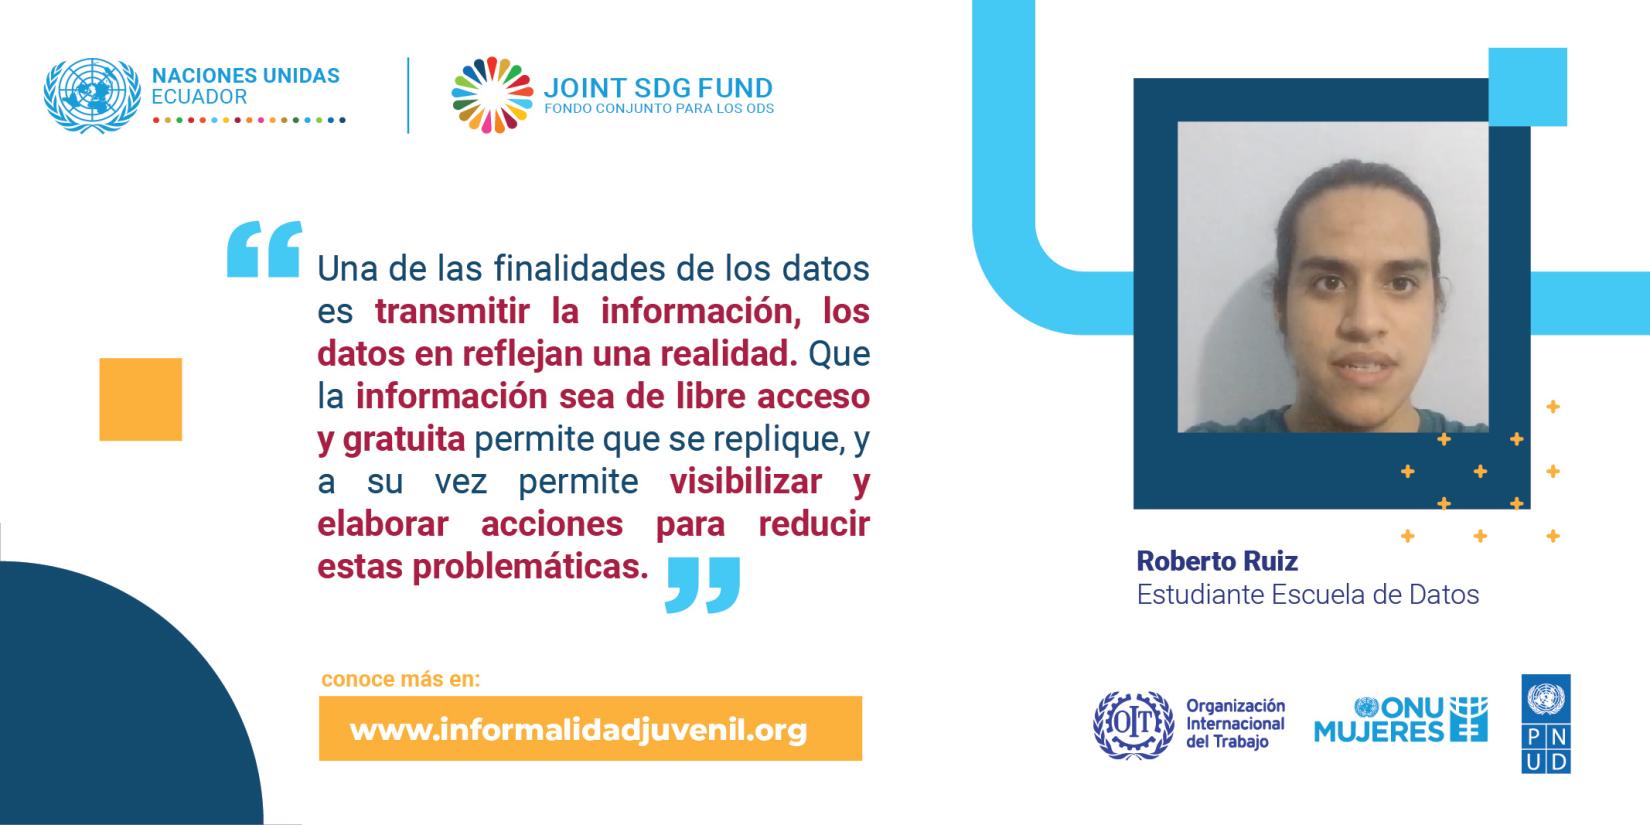 Testimonio de Roberto Ruiz - Lanzamiento portal programa SDG Fund